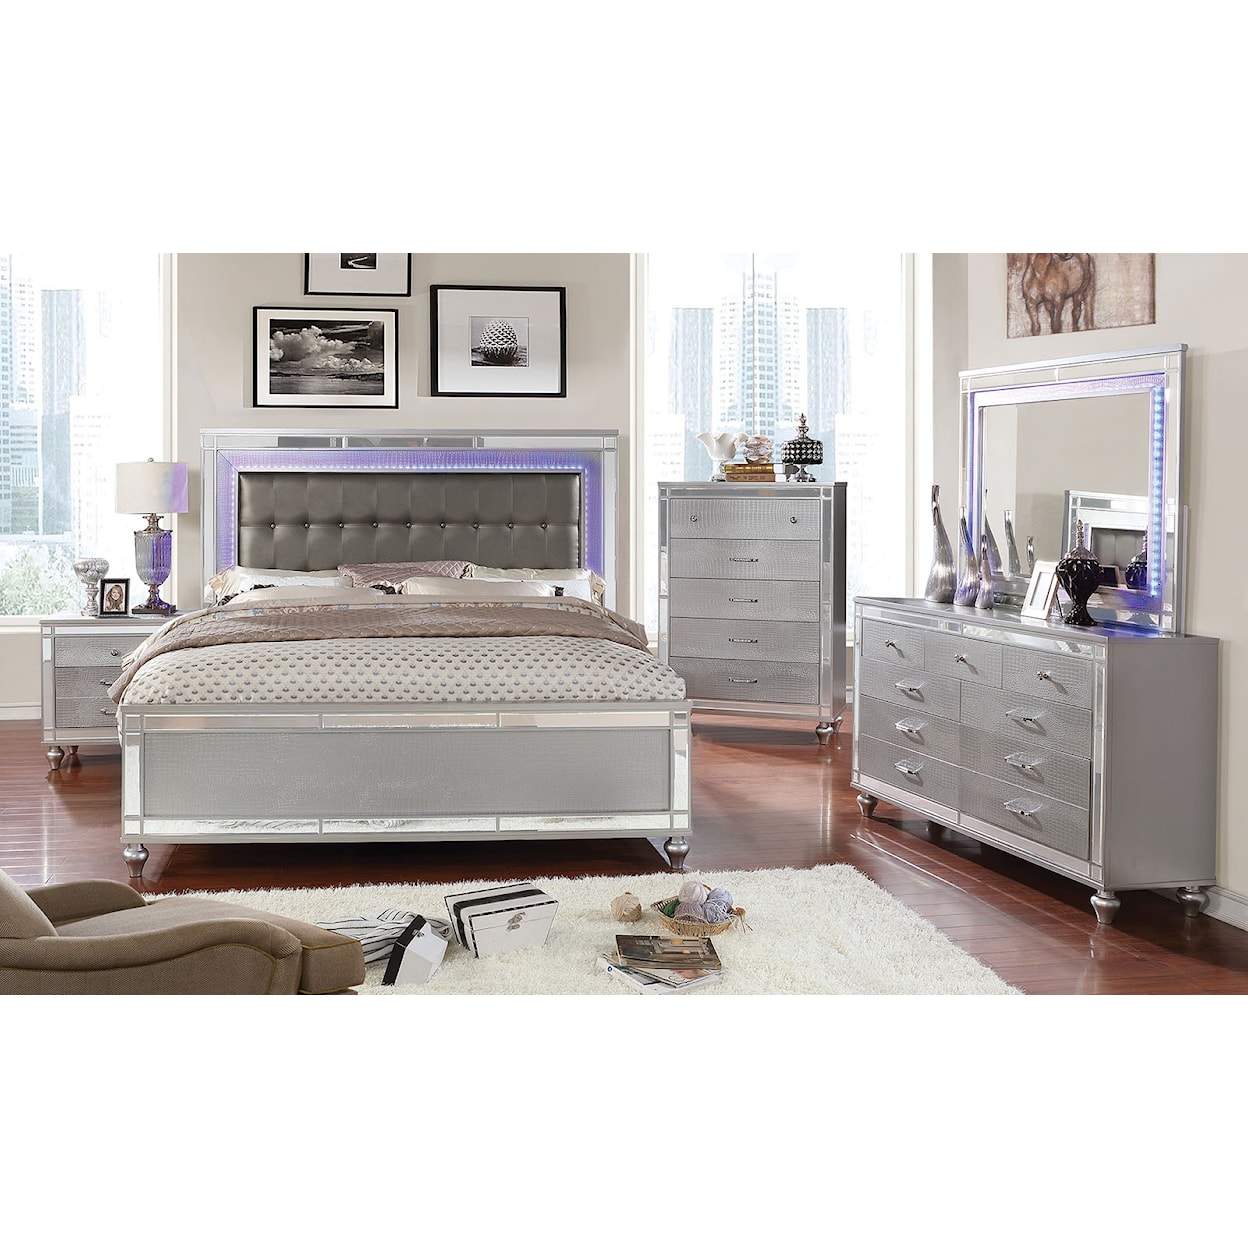 Furniture of America Brachium 5-Piece Queen Bedroom Set